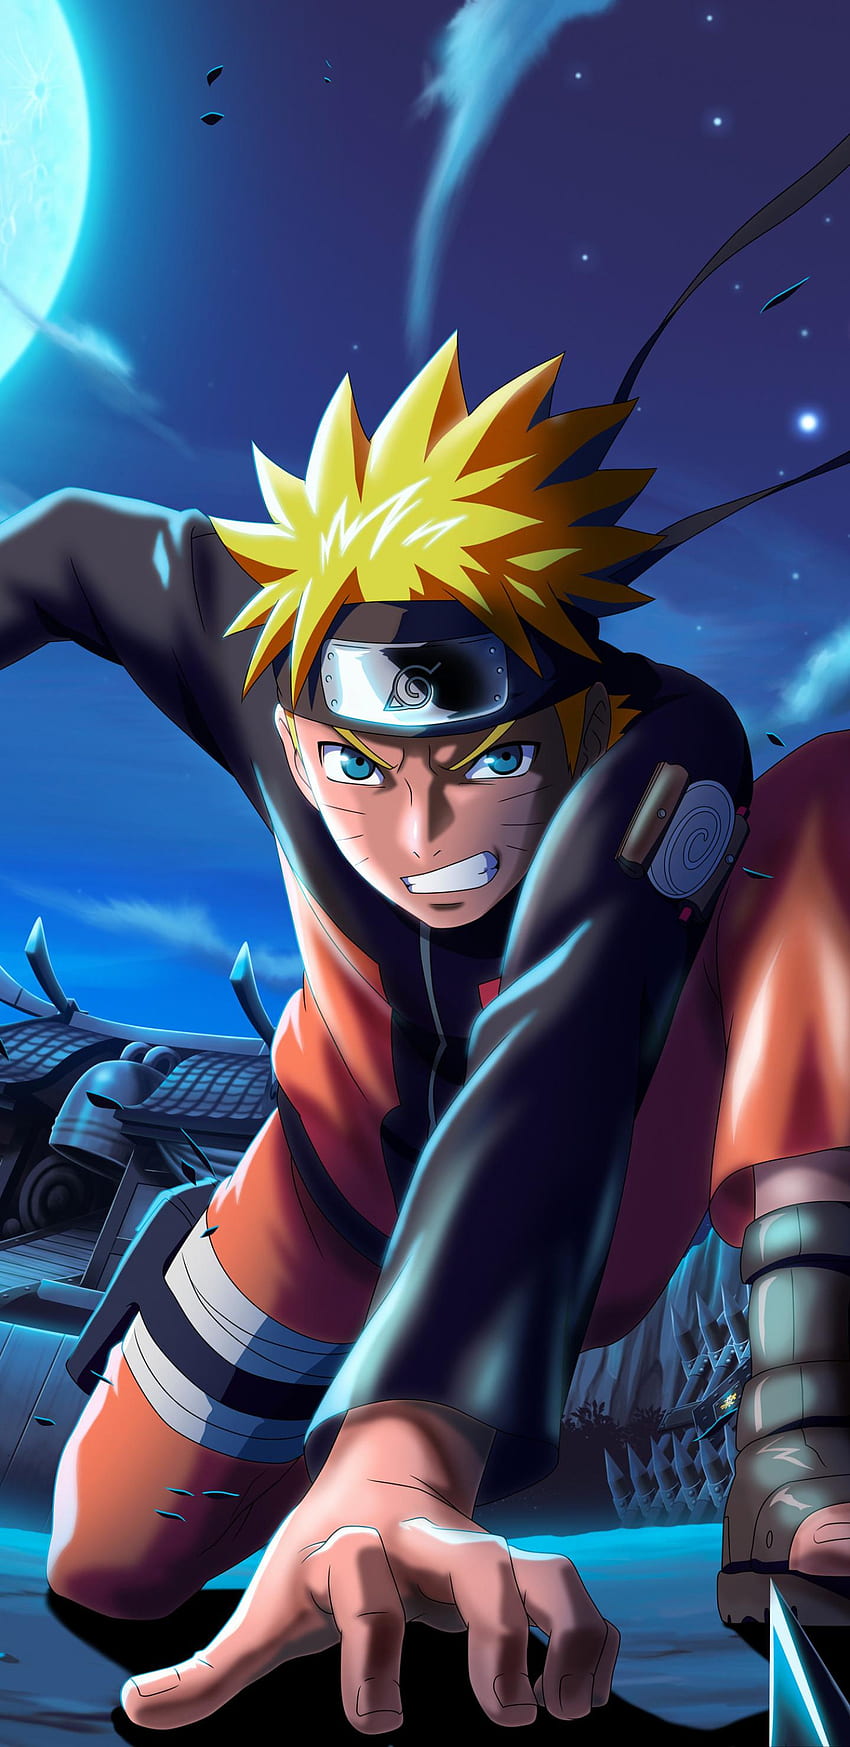 Naruto X Boruto - Hình nền điện thoại HD Naruto X Boruto: Ninja Voltage: Bạn là một fan hâm mộ của cả Naruto và Boruto? Hãy tải ngay các hình nền HD về Naruto X Boruto: Ninja Voltage để trang trí cho điện thoại của mình! Chúng tôi cung cấp cho bạn những hình nền độc đáo và sáng tạo nhất để bạn có thể tùy chỉnh cho điện thoại di động của mình. Hãy khám phá ngay hôm nay!